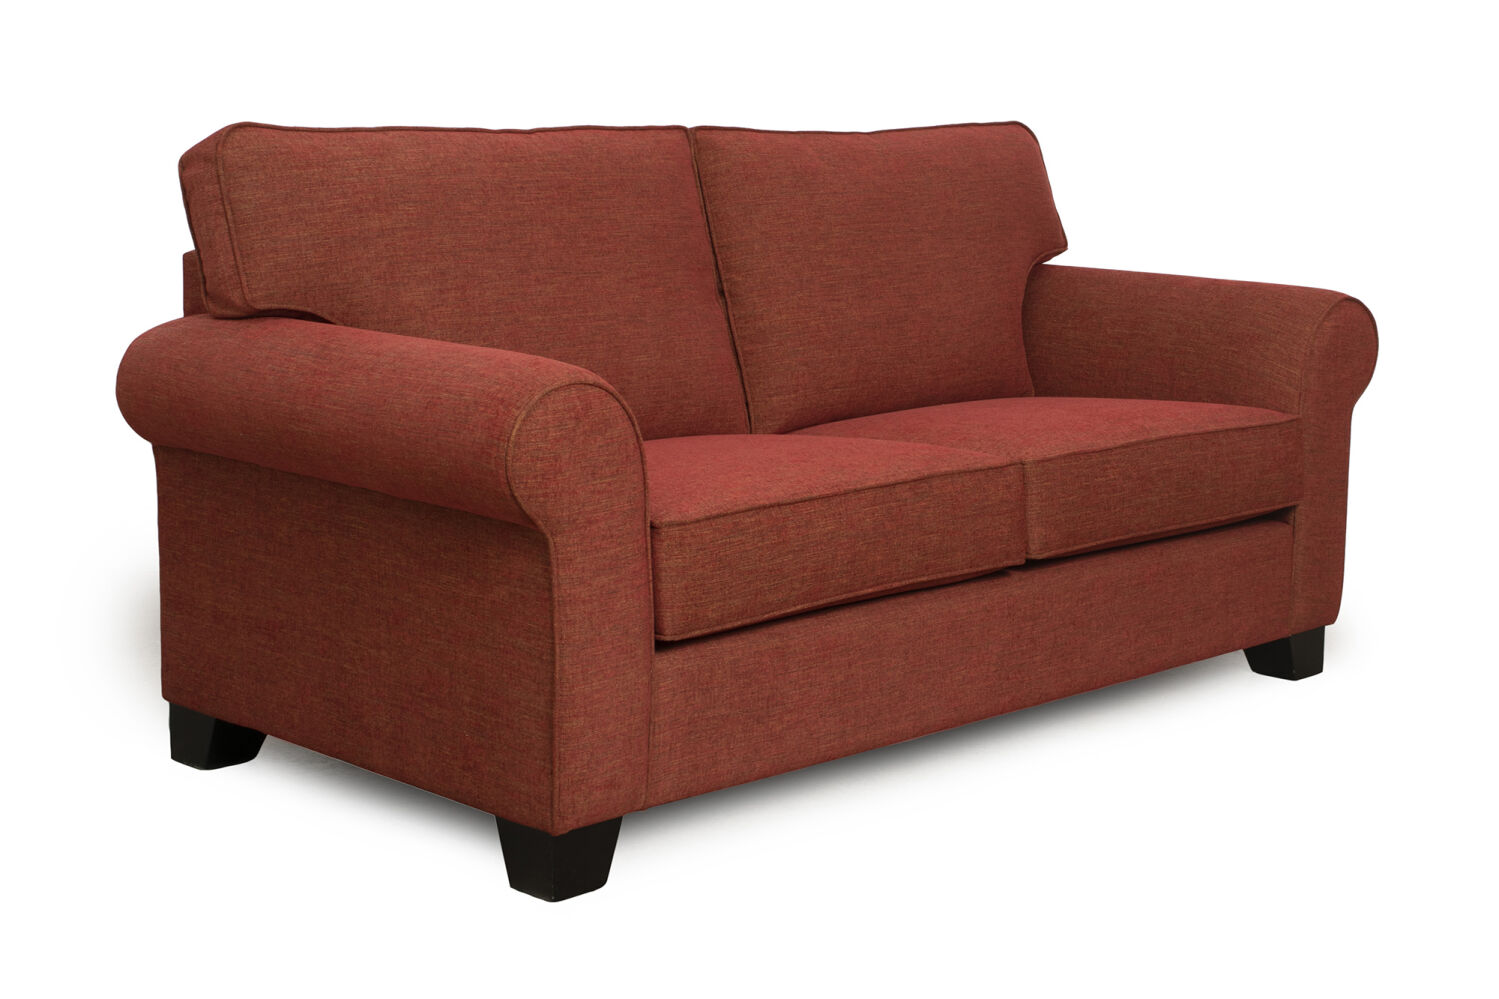 Sussex 3 Seater Sofa